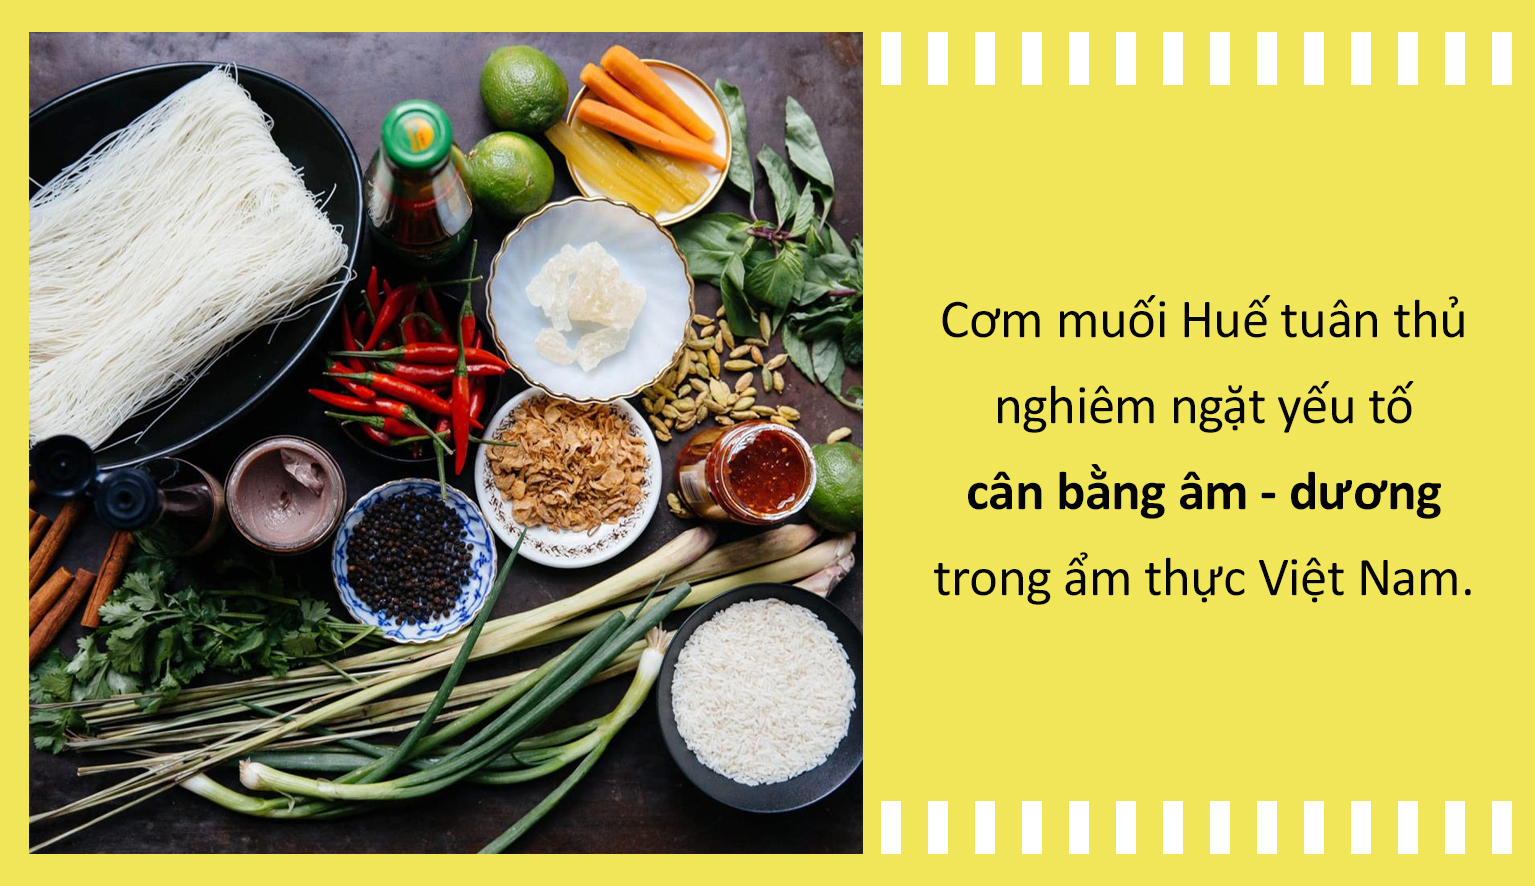 Ẩm thực Việt: Cơm muối - Món 'sơn trân hải vị' ở xứ Huế, có tiền cũng khó mà ăn - 5